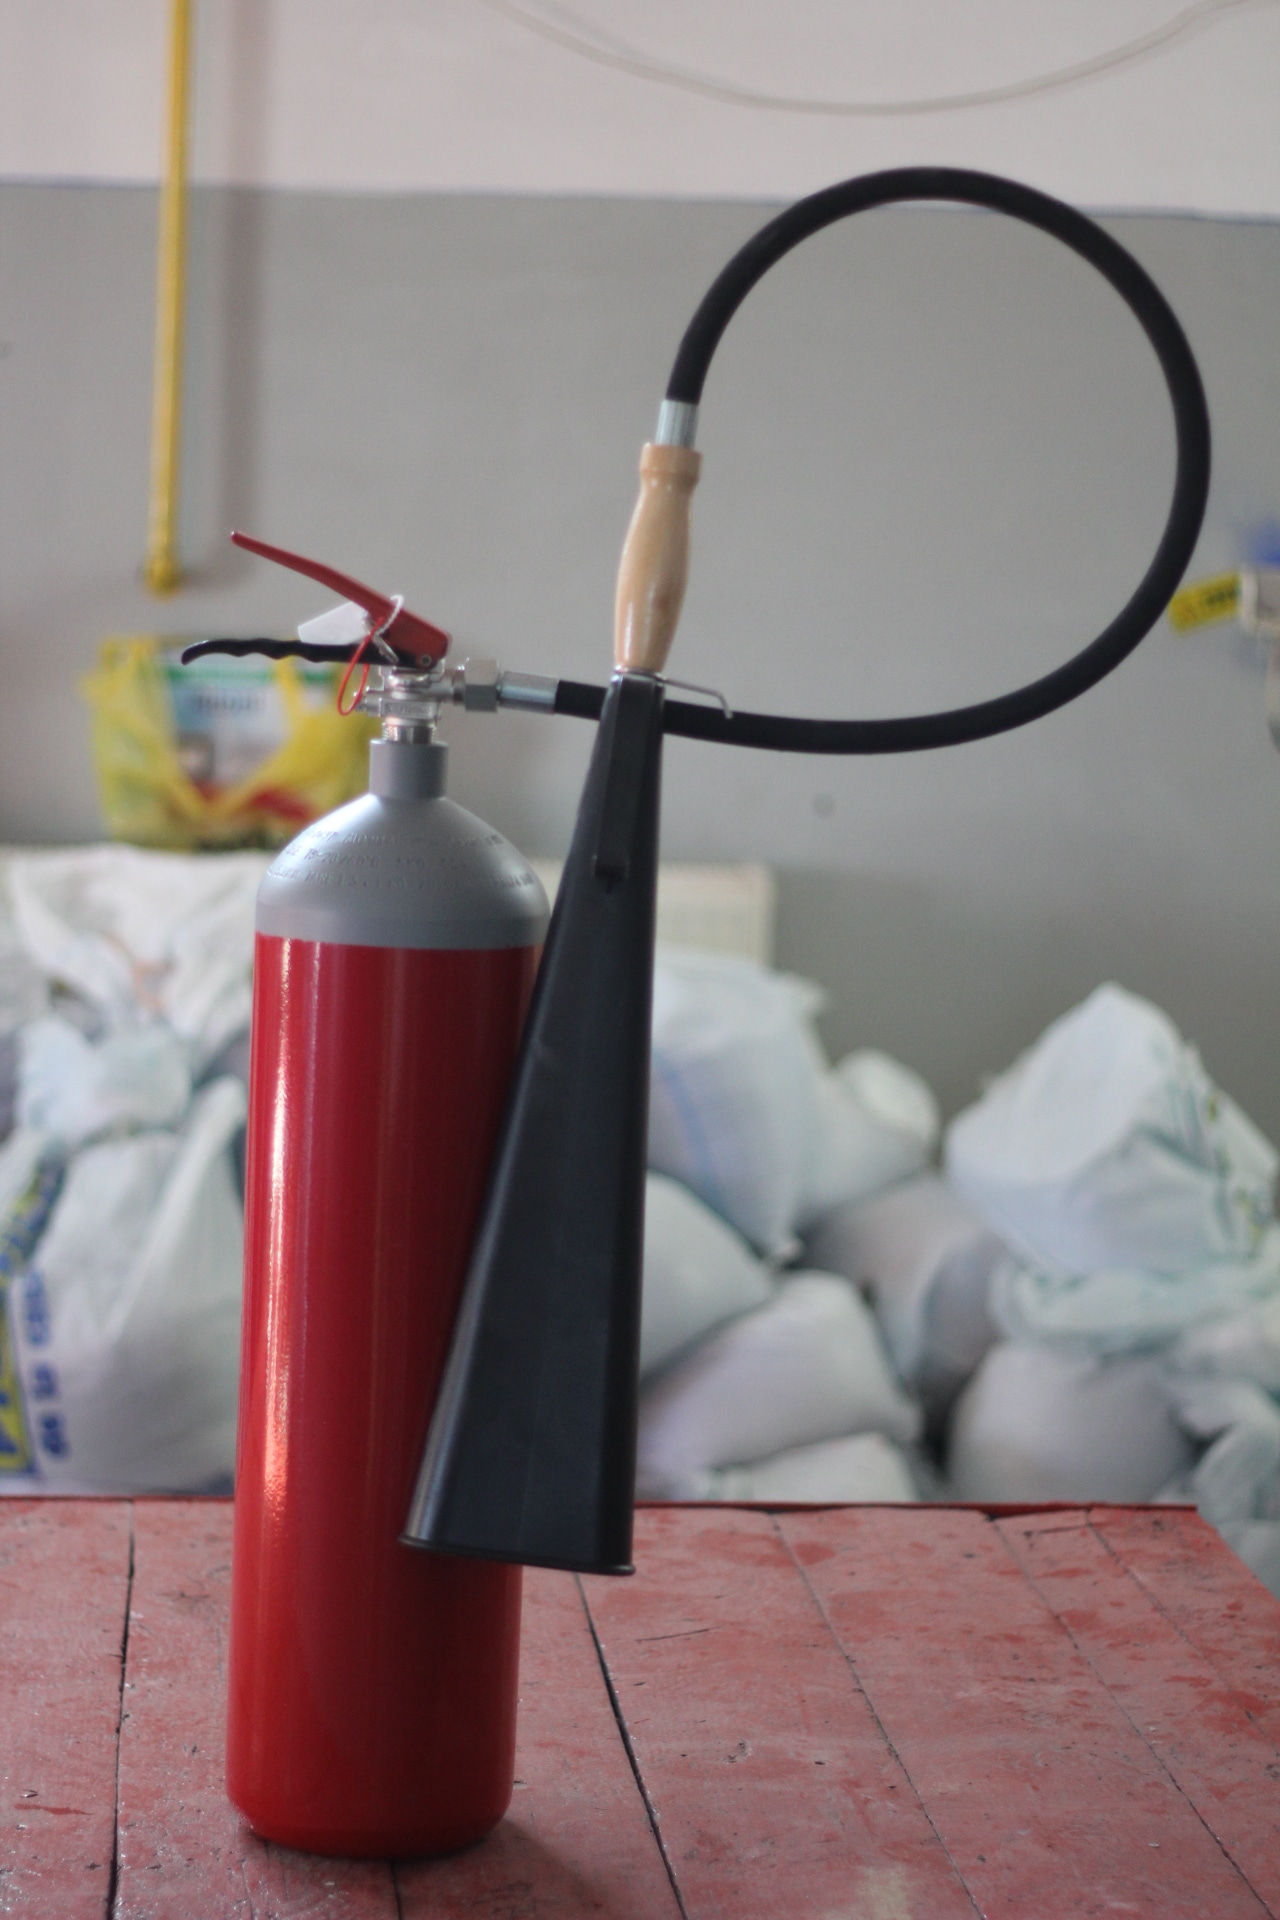 5.0 KG Carbon Dioxide Portable Extinguisher